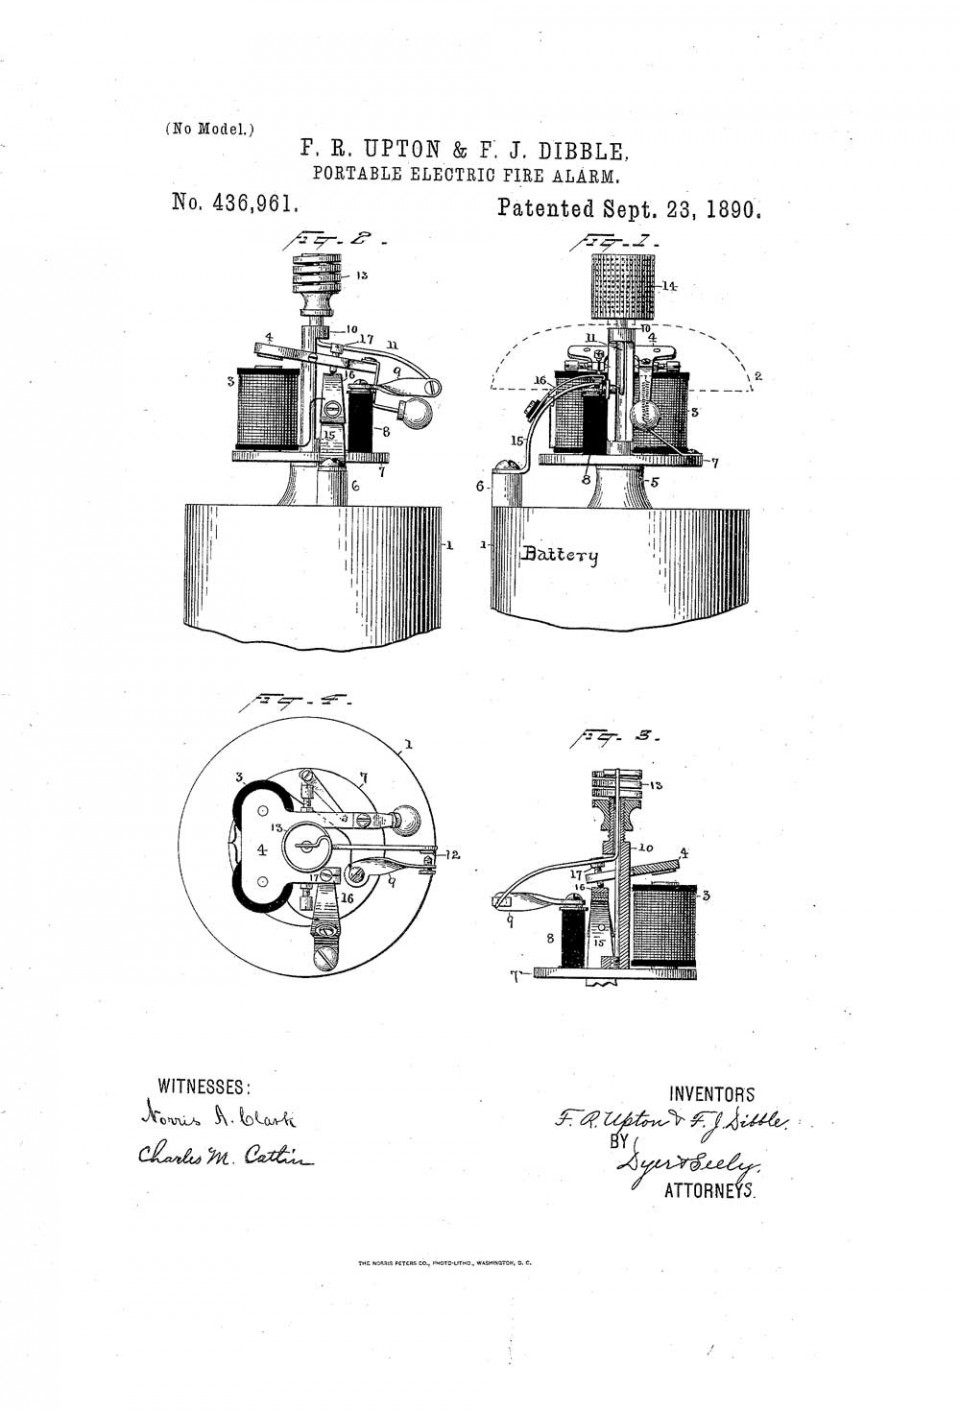 Рисунок автоматического пожарного извещателя из патента Аптона и Диббла, США, 1890 год.